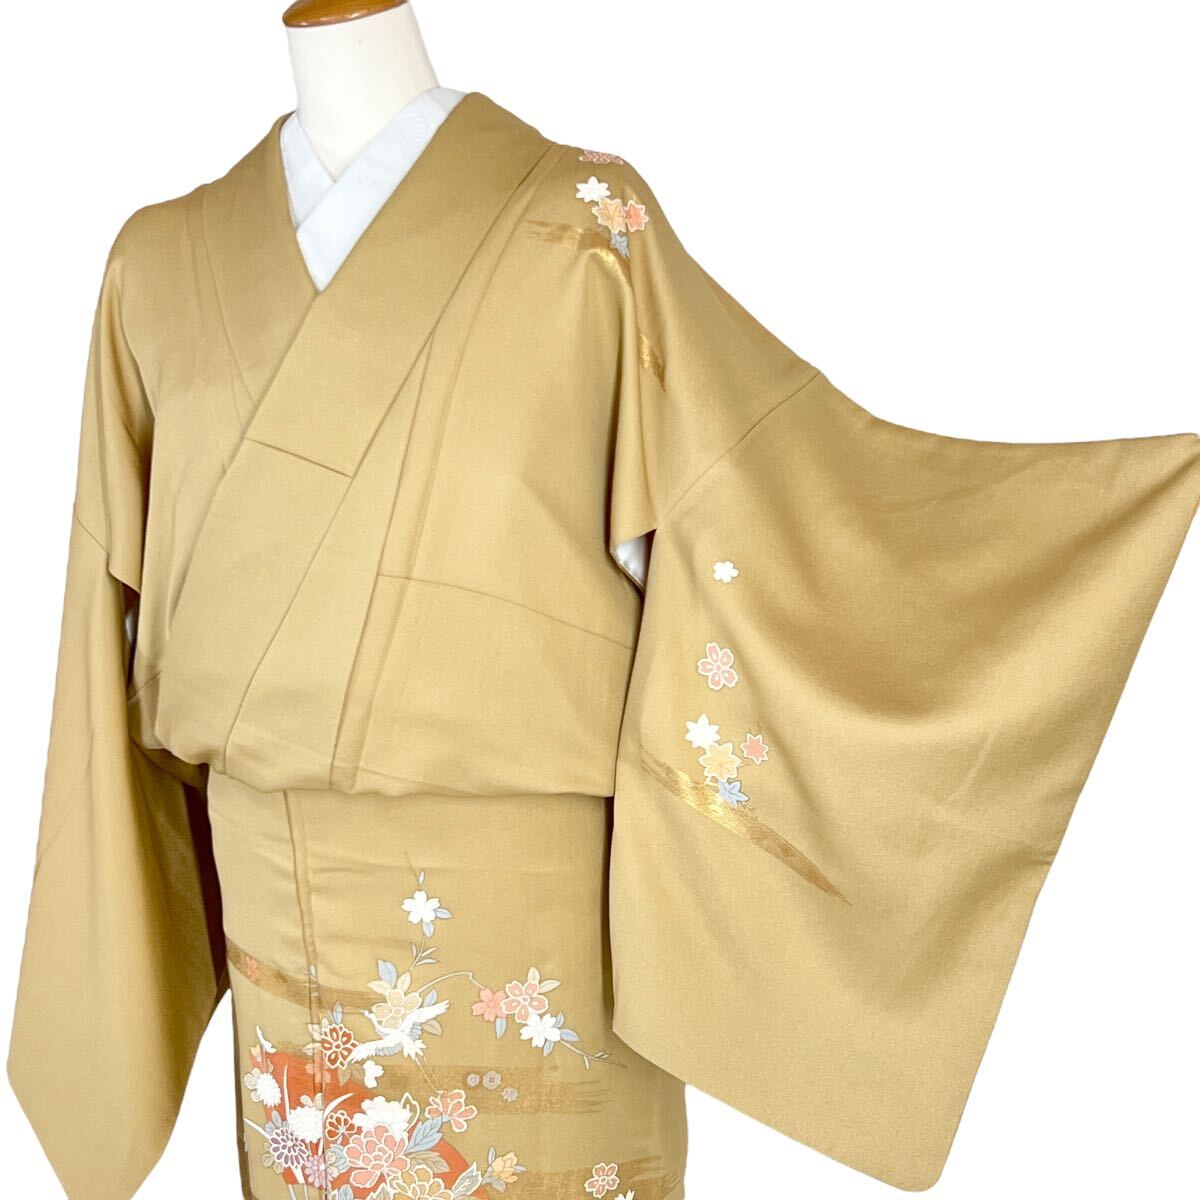 付下げ・長襦袢セット 附下 付け下げ 訪問着 袷着物 きもの フォーマル リサイクル着物 kimono 中古 仕立て上がり 身丈154.5cm 裄丈64cm_画像2